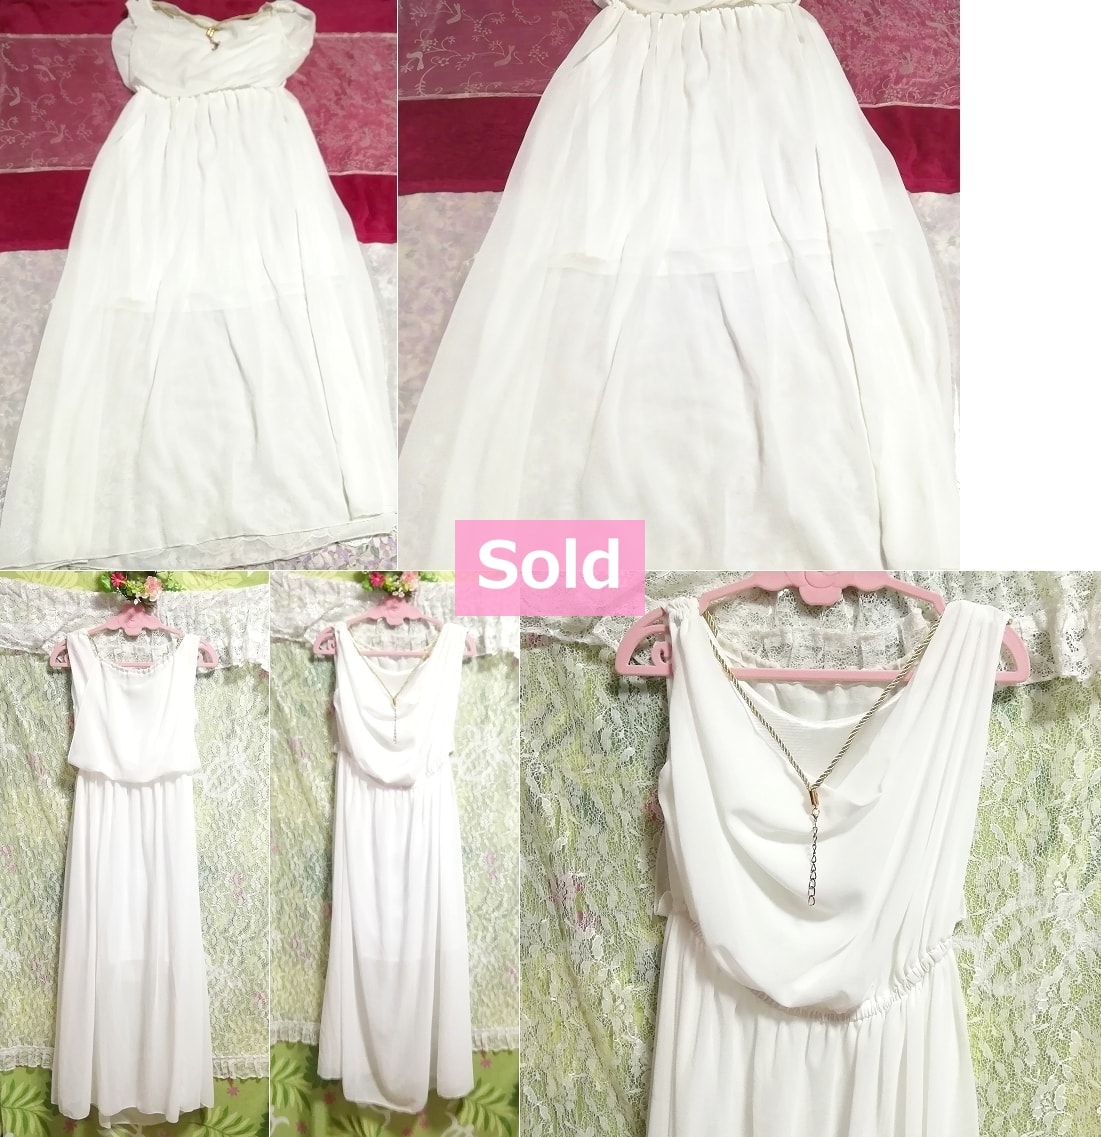 White angel robe chiffon sleeveless maxi long one piece